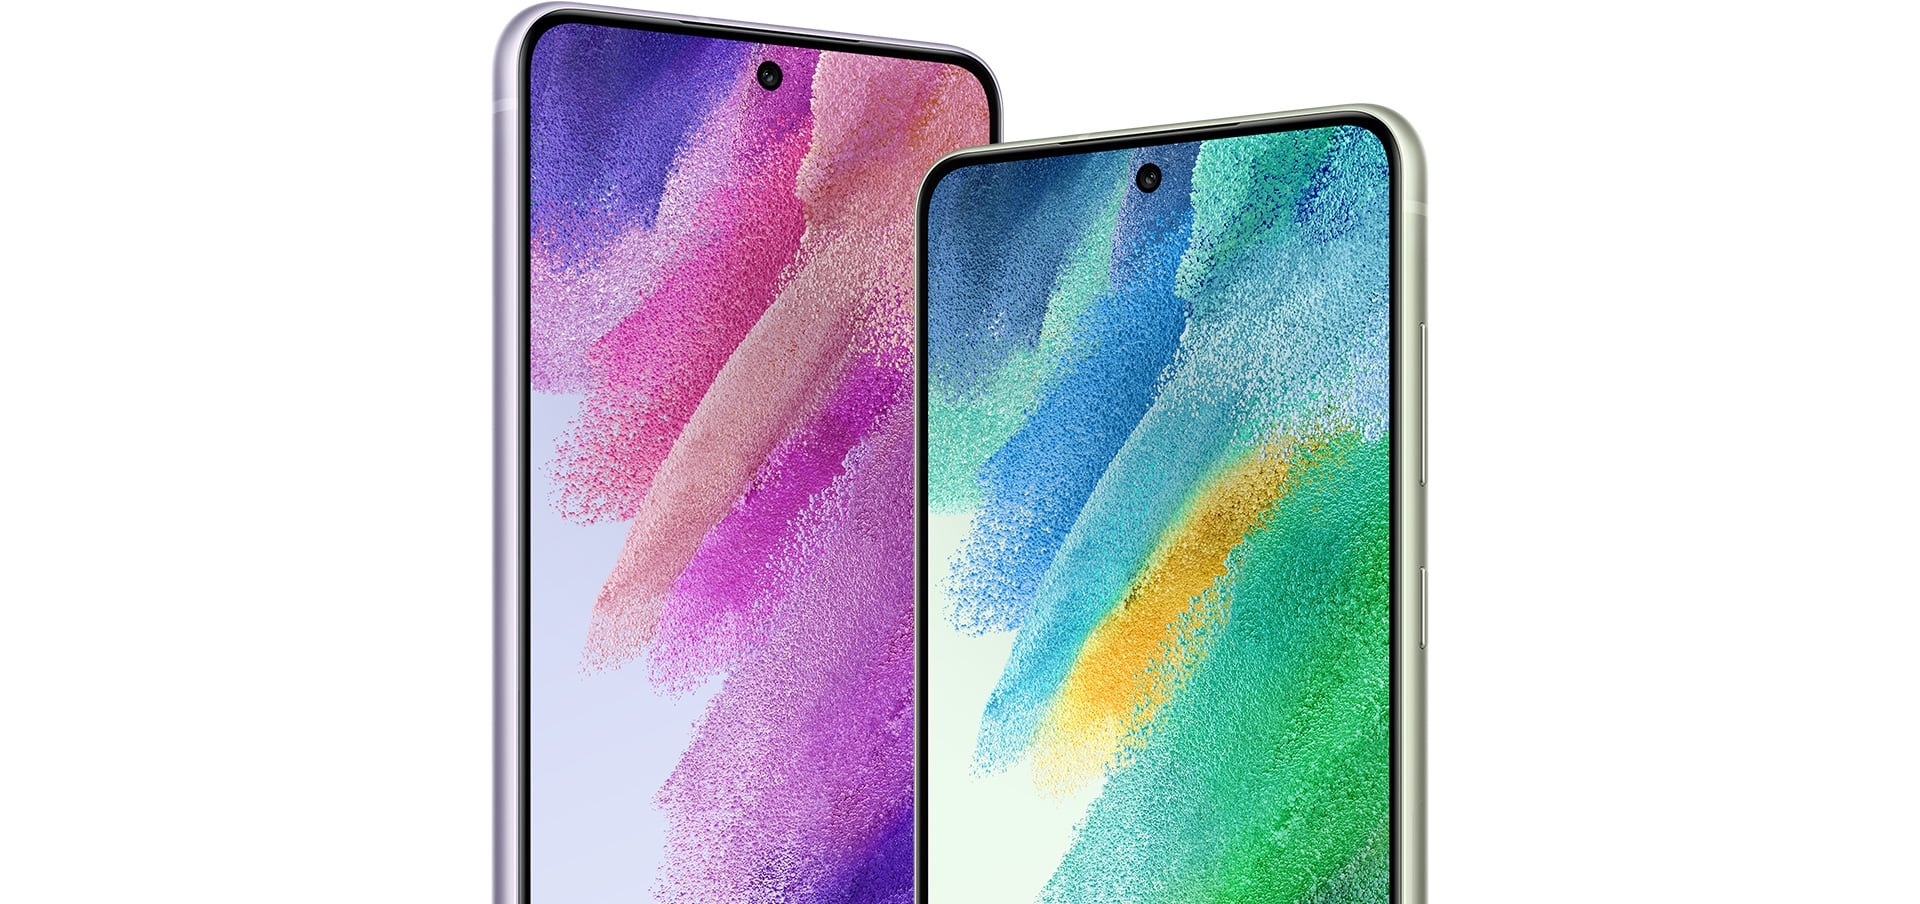 Zwei Galaxy S21 FE 5G Smartphones von vorne gesehen nebeneinander. Das eine hat einen rosa und lila Grafik-Bildschirmhintergrund, und das andere hat einen grünen und blauen Grafik-Bildschirmhintergrund.